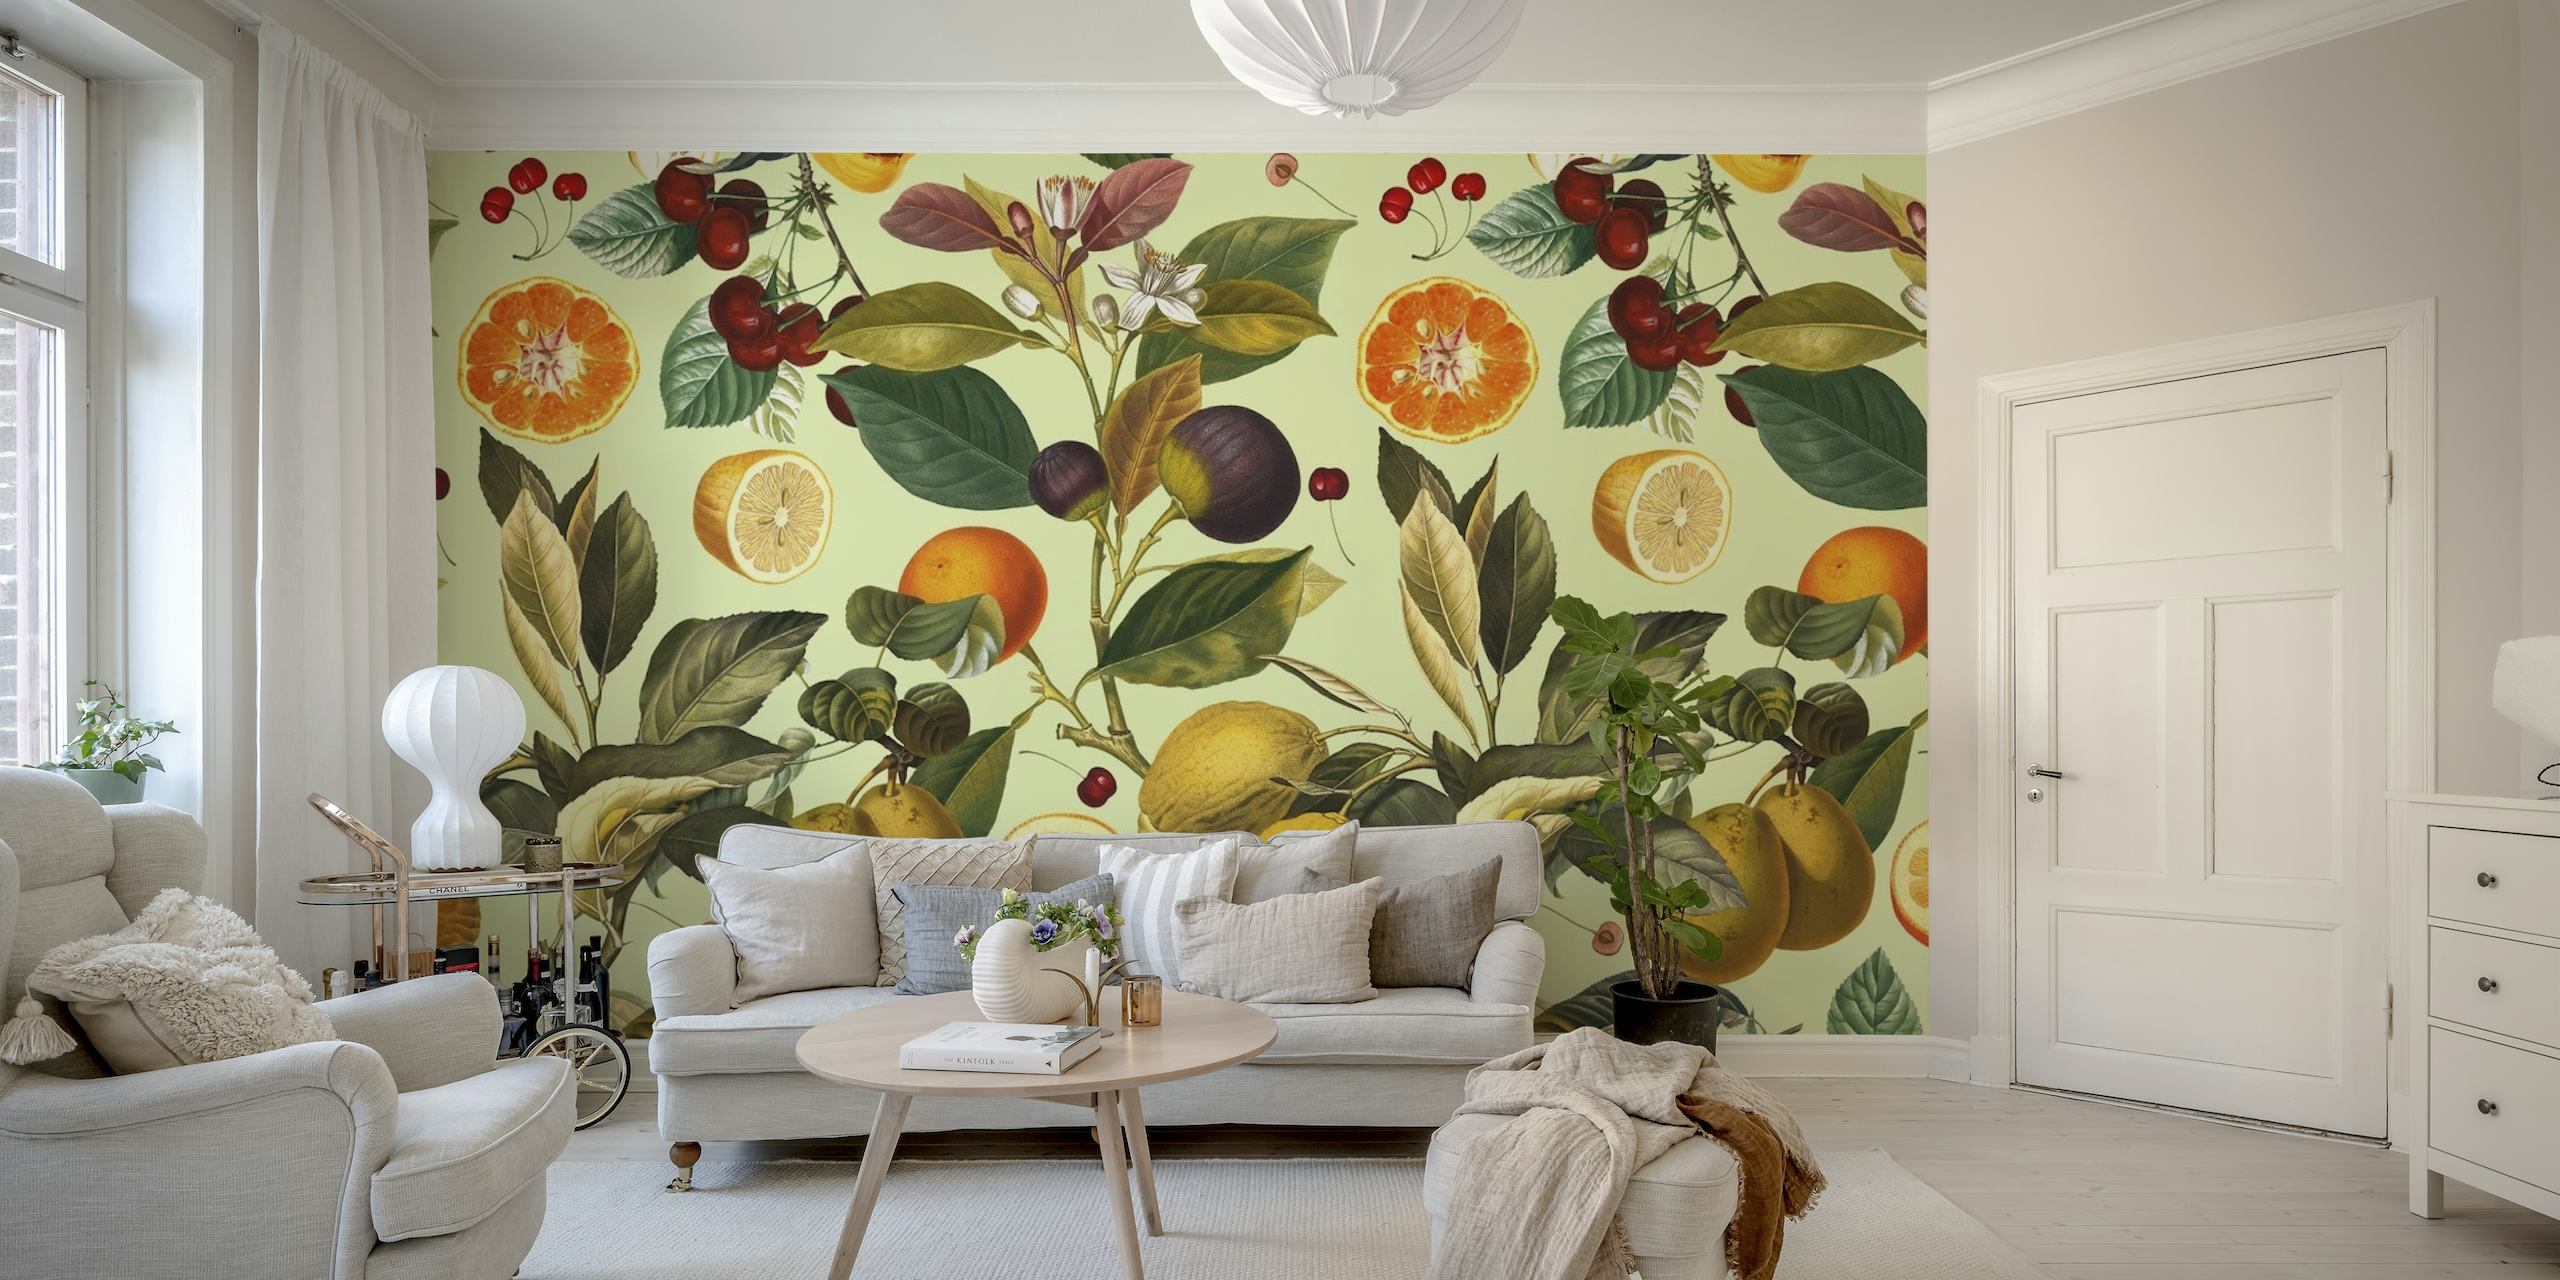 Papier peint mural vintage à motifs de fruits et de plantes avec des agrumes, des baies et des prunes.